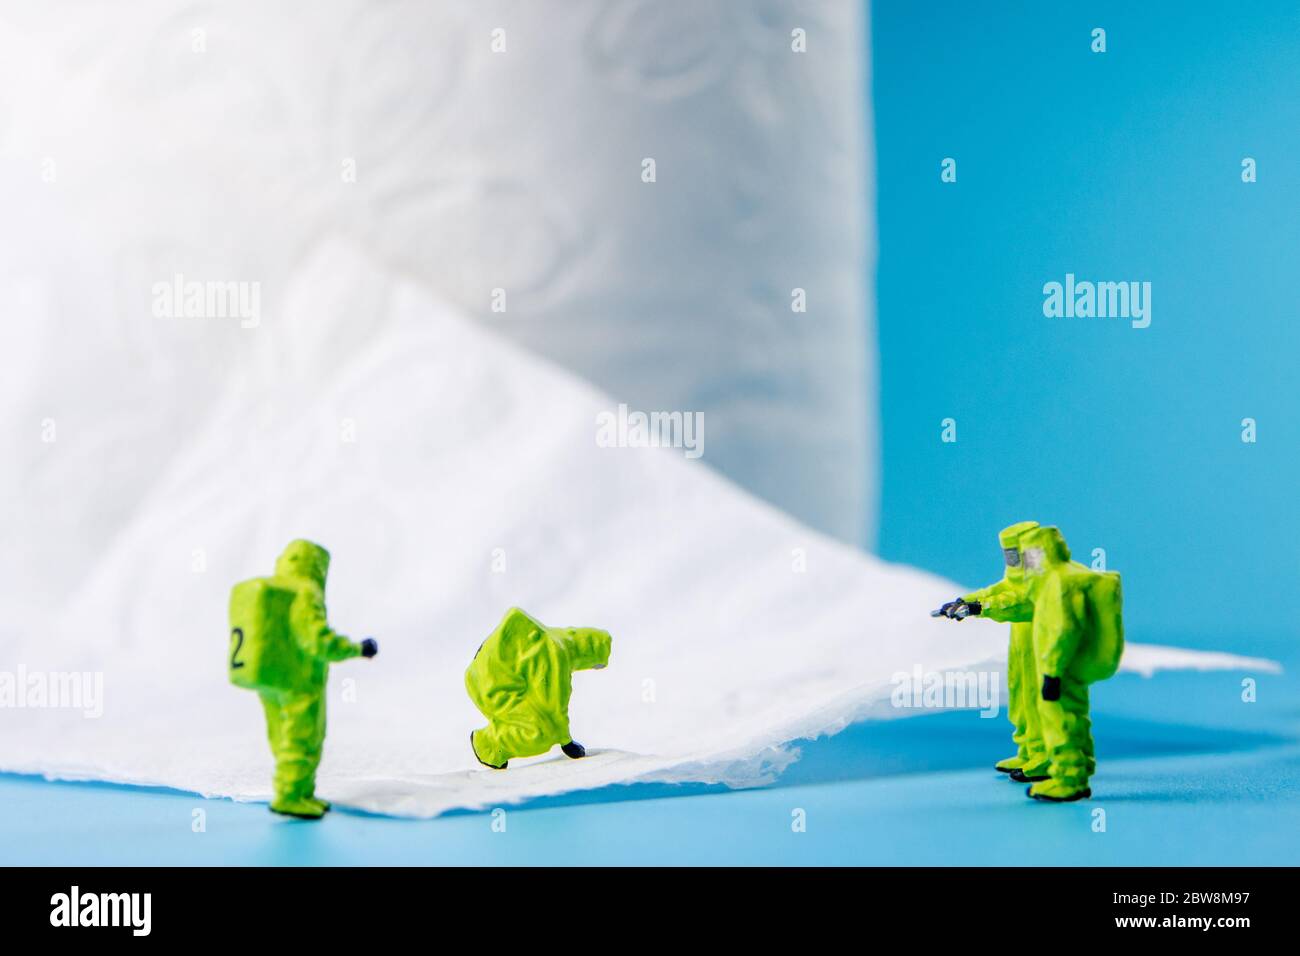 une équipe de figurines miniatures vérifiant une propreté du papier toilette, très important pour faire une desinfection de la toilette et d'autres endroits peut-être sale Banque D'Images